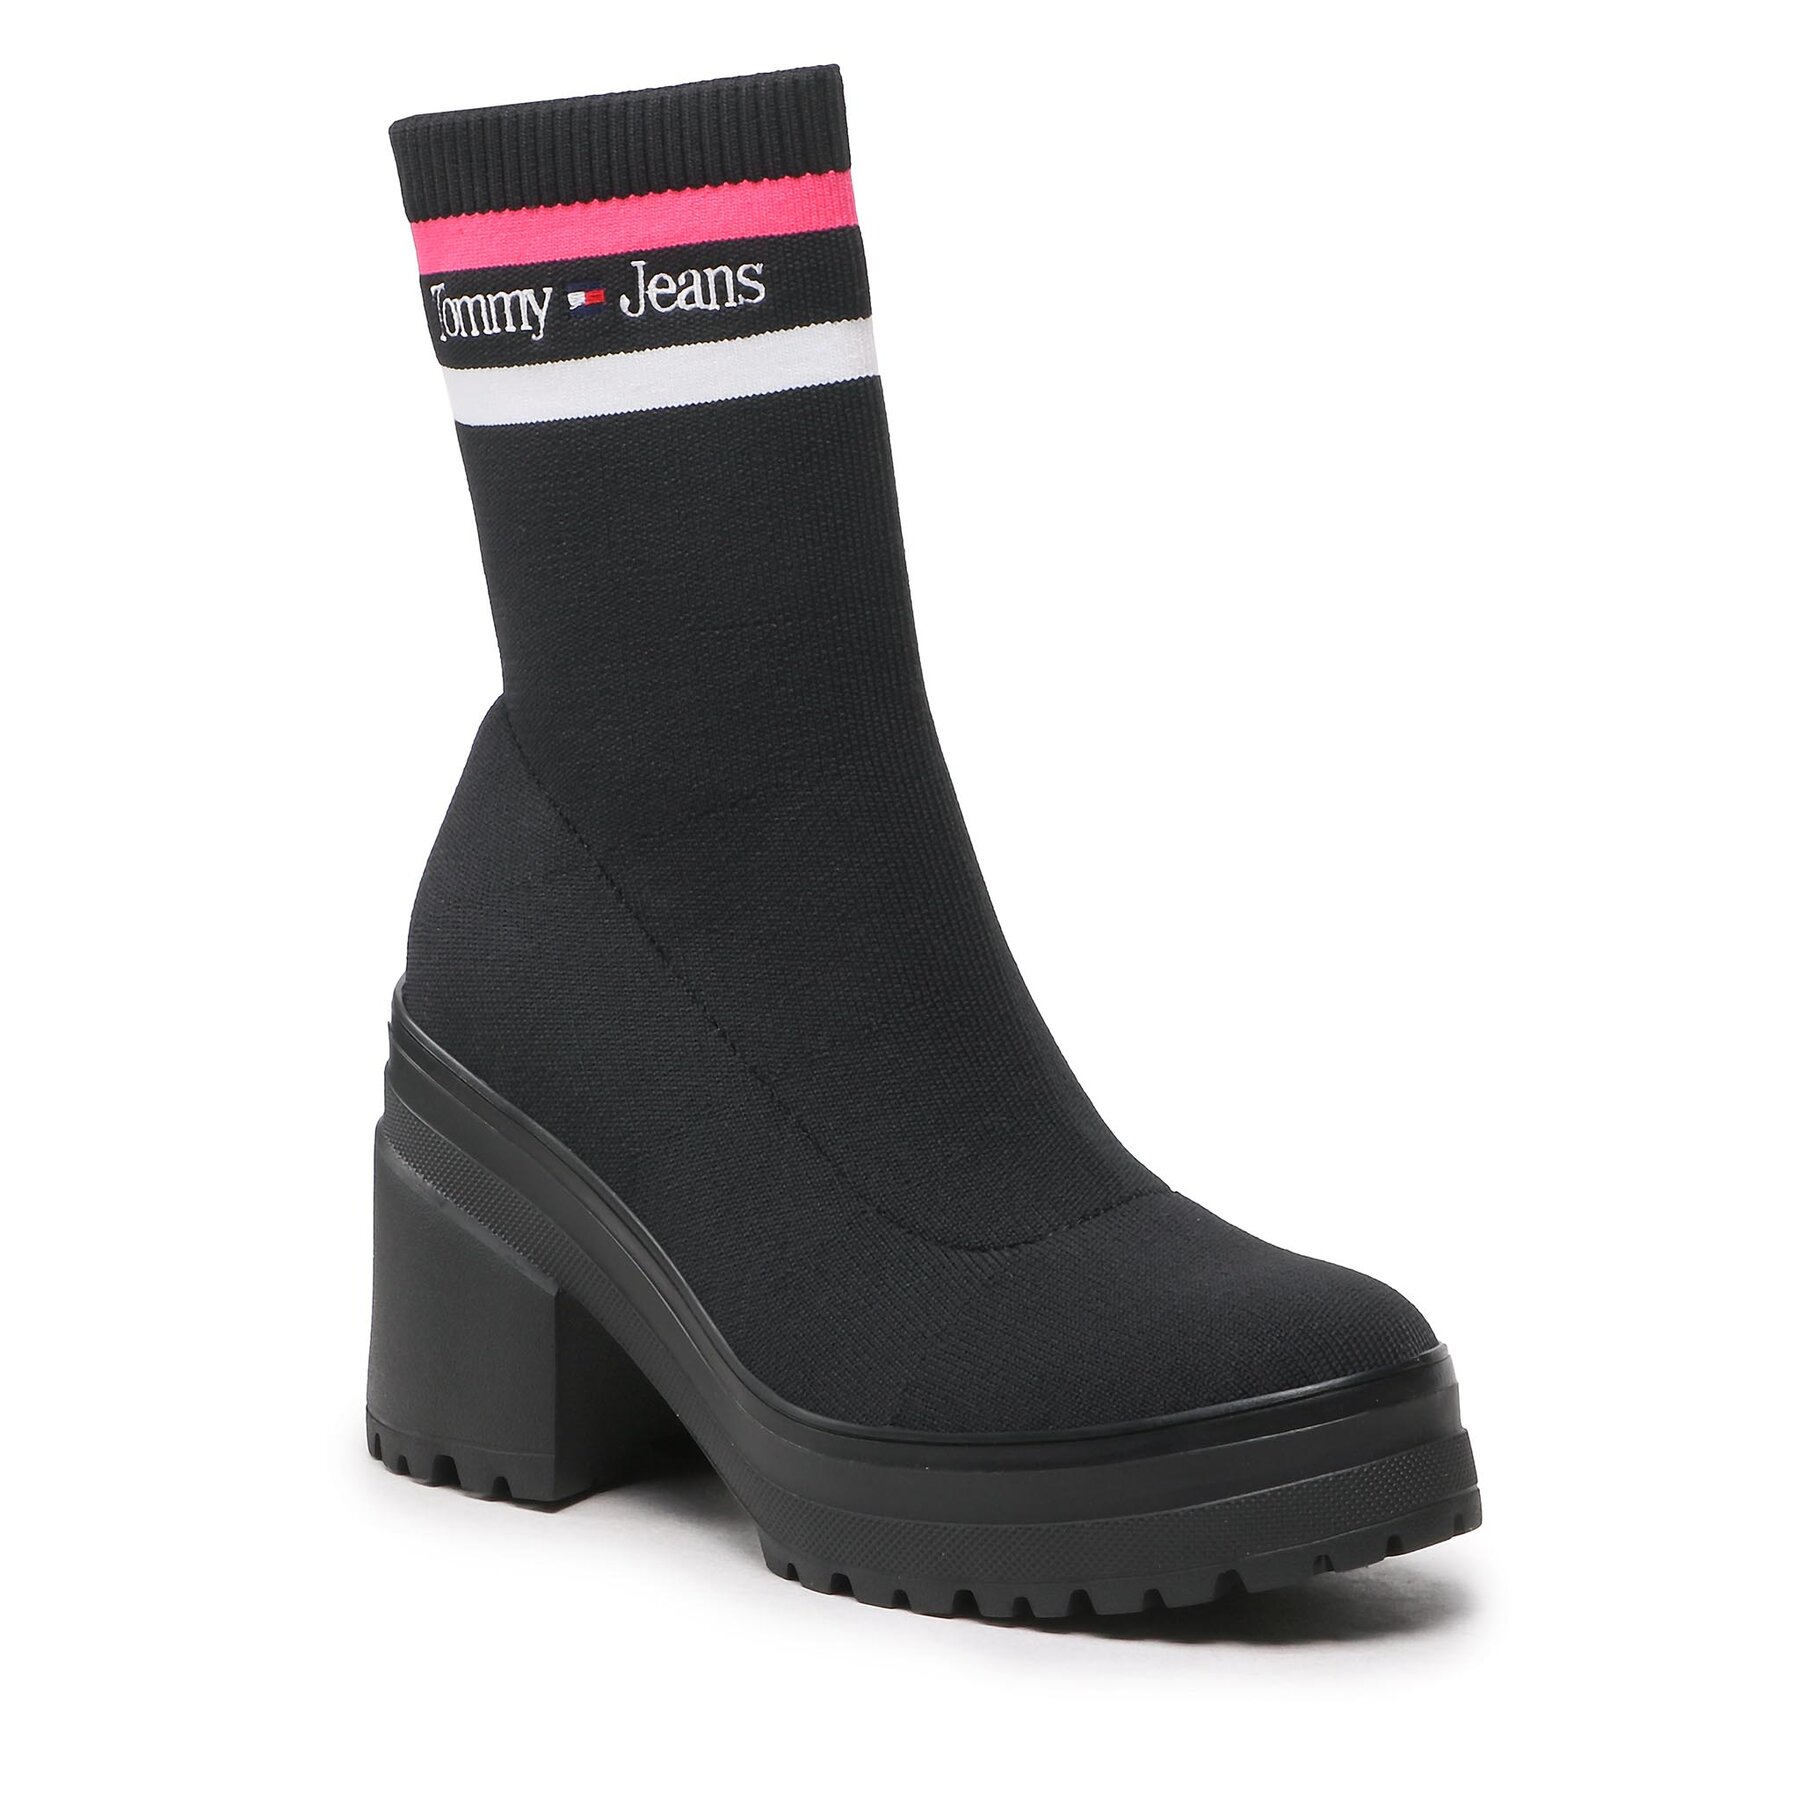 Škornji Tommy Jeans Knitted Boot EN0EN02061 Black And Jewel Pink 0GJ